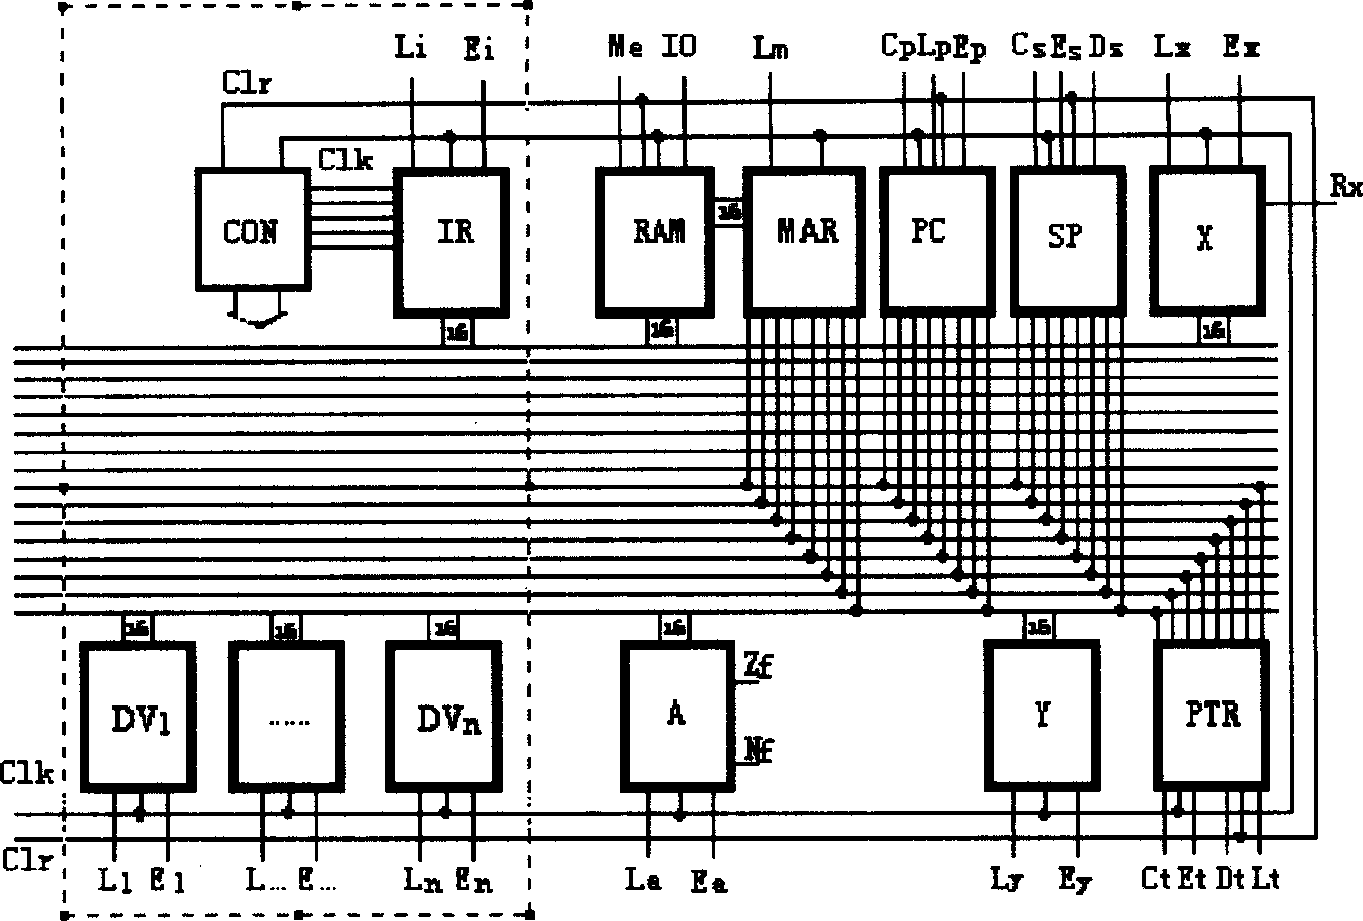 Core design of PU-MU-CHL structured computer